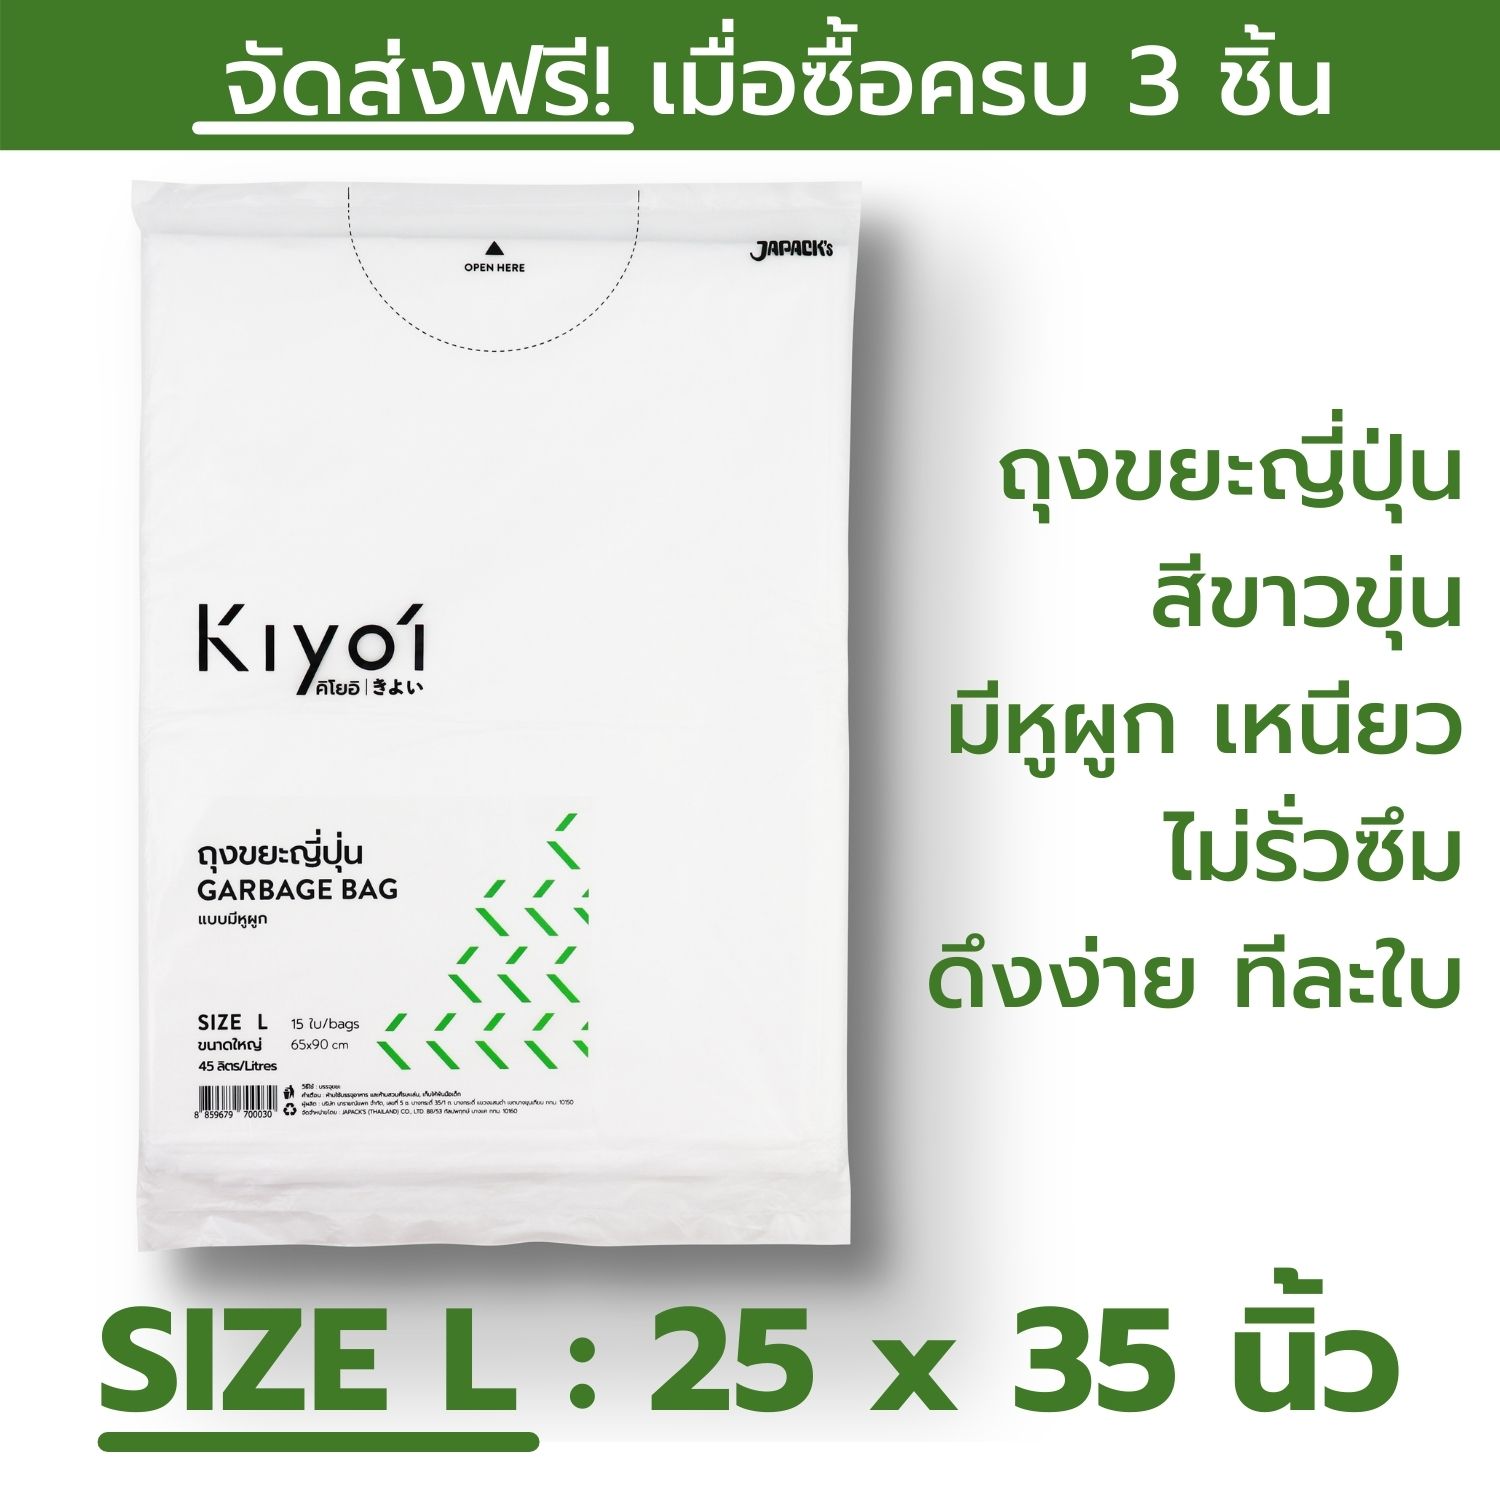 KIYOI (คิโยอิ)- ถุงขยะญี่ปุ่นมีหูผูก SIZE L ขนาดใหญ่ (65x90 ซม. หรือ25x35นิ้ว) 15 ใบ/แพ๊ค